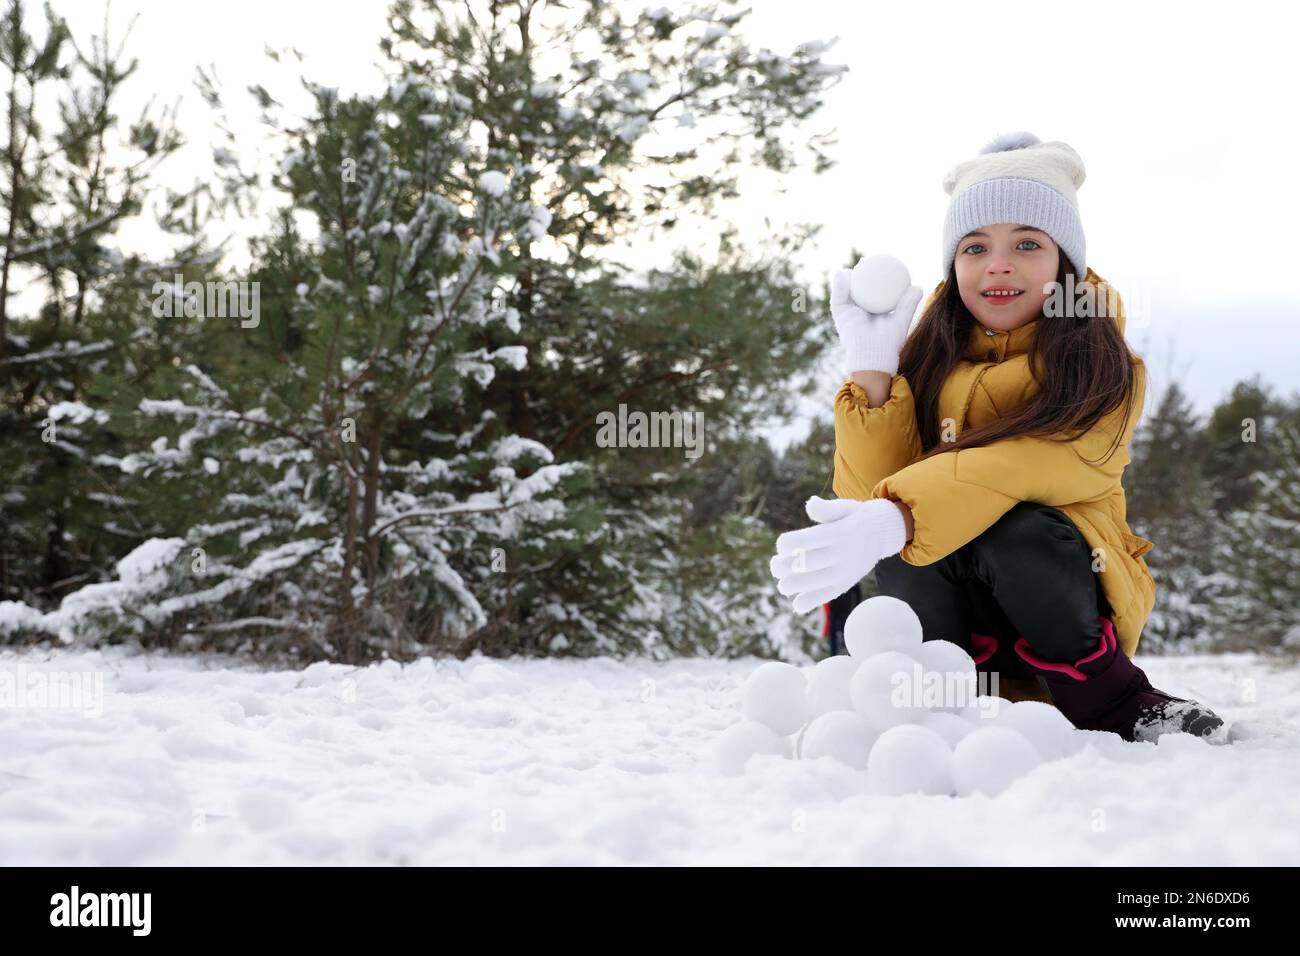 Jolie petite fille qui roule des boules de neige dans la forêt d'hiver Banque D'Images